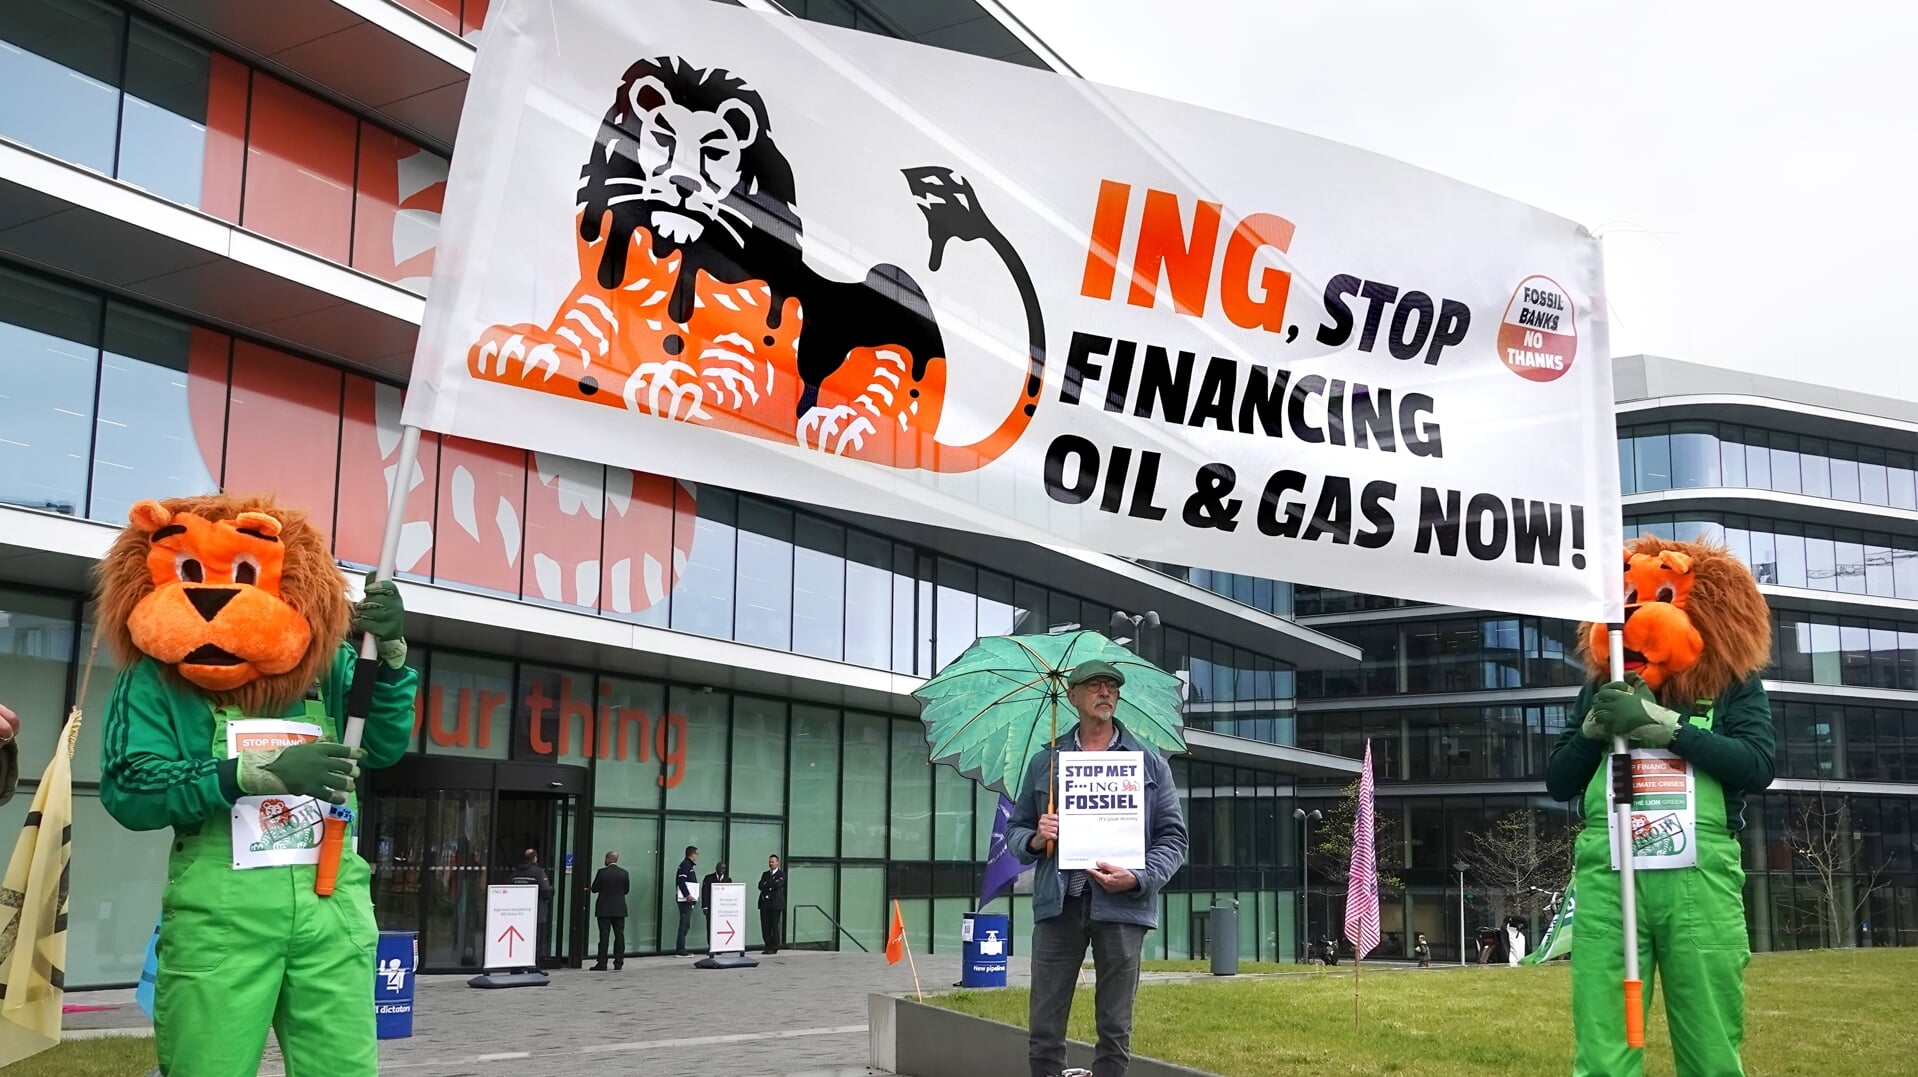 Actiegroepen voor het klimaat roepen de ING-bank op hun financiering van fossiele brandstoffen te stoppen. Vrijwel alle grote financiële instellingen gaan door met investeren in olie en gas.